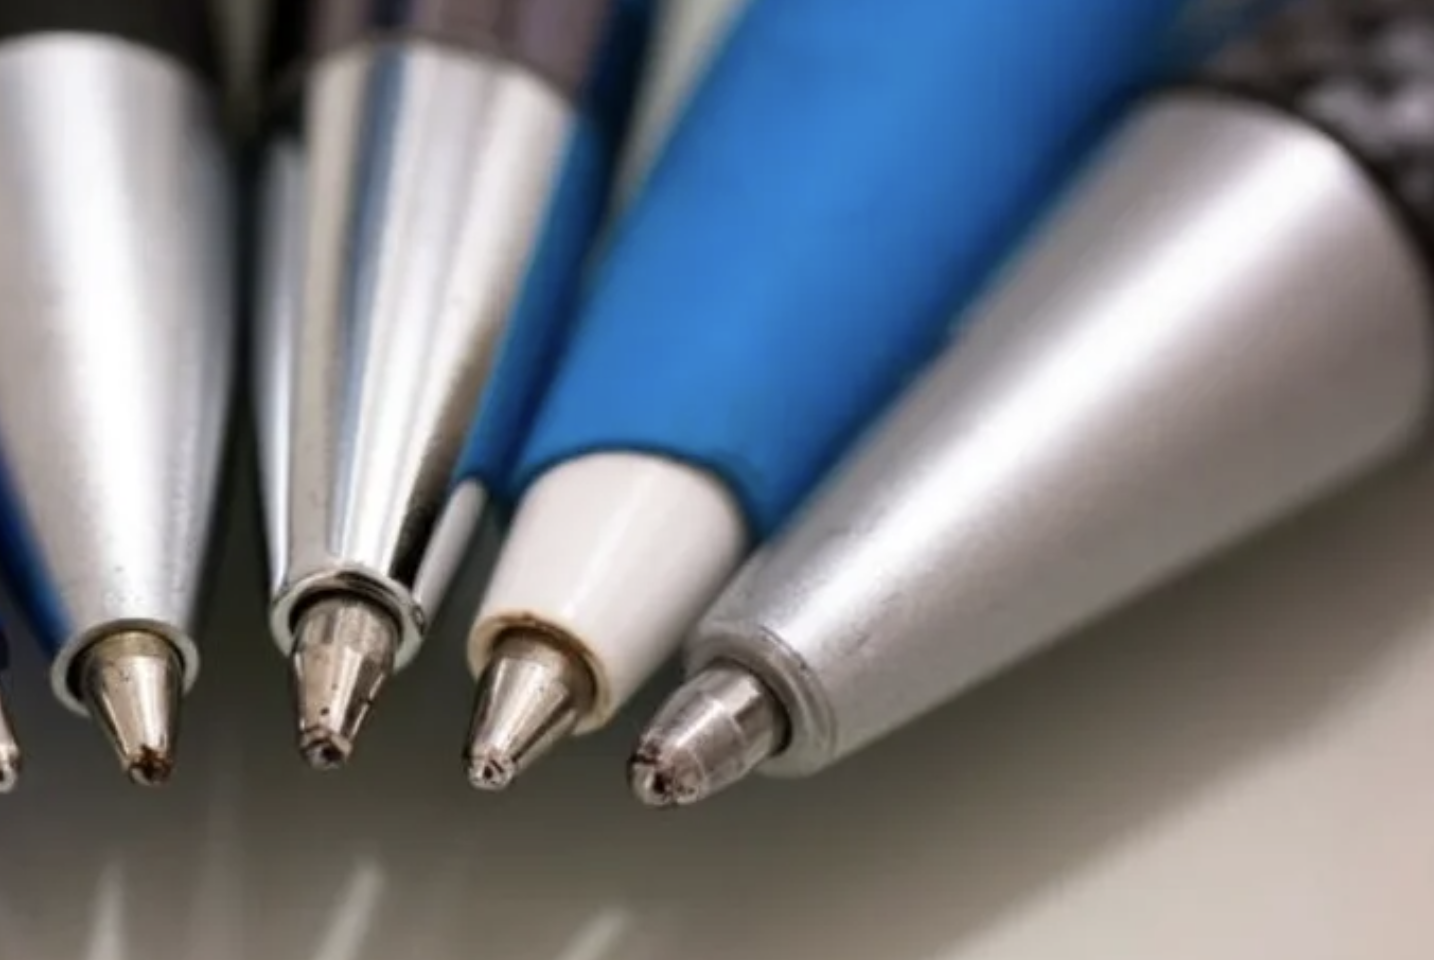 Bolígrafos personalizados para empresas, uno de los regalos publicitarios para generar visibilidad a tu marca. MUNDODEPORTIVO